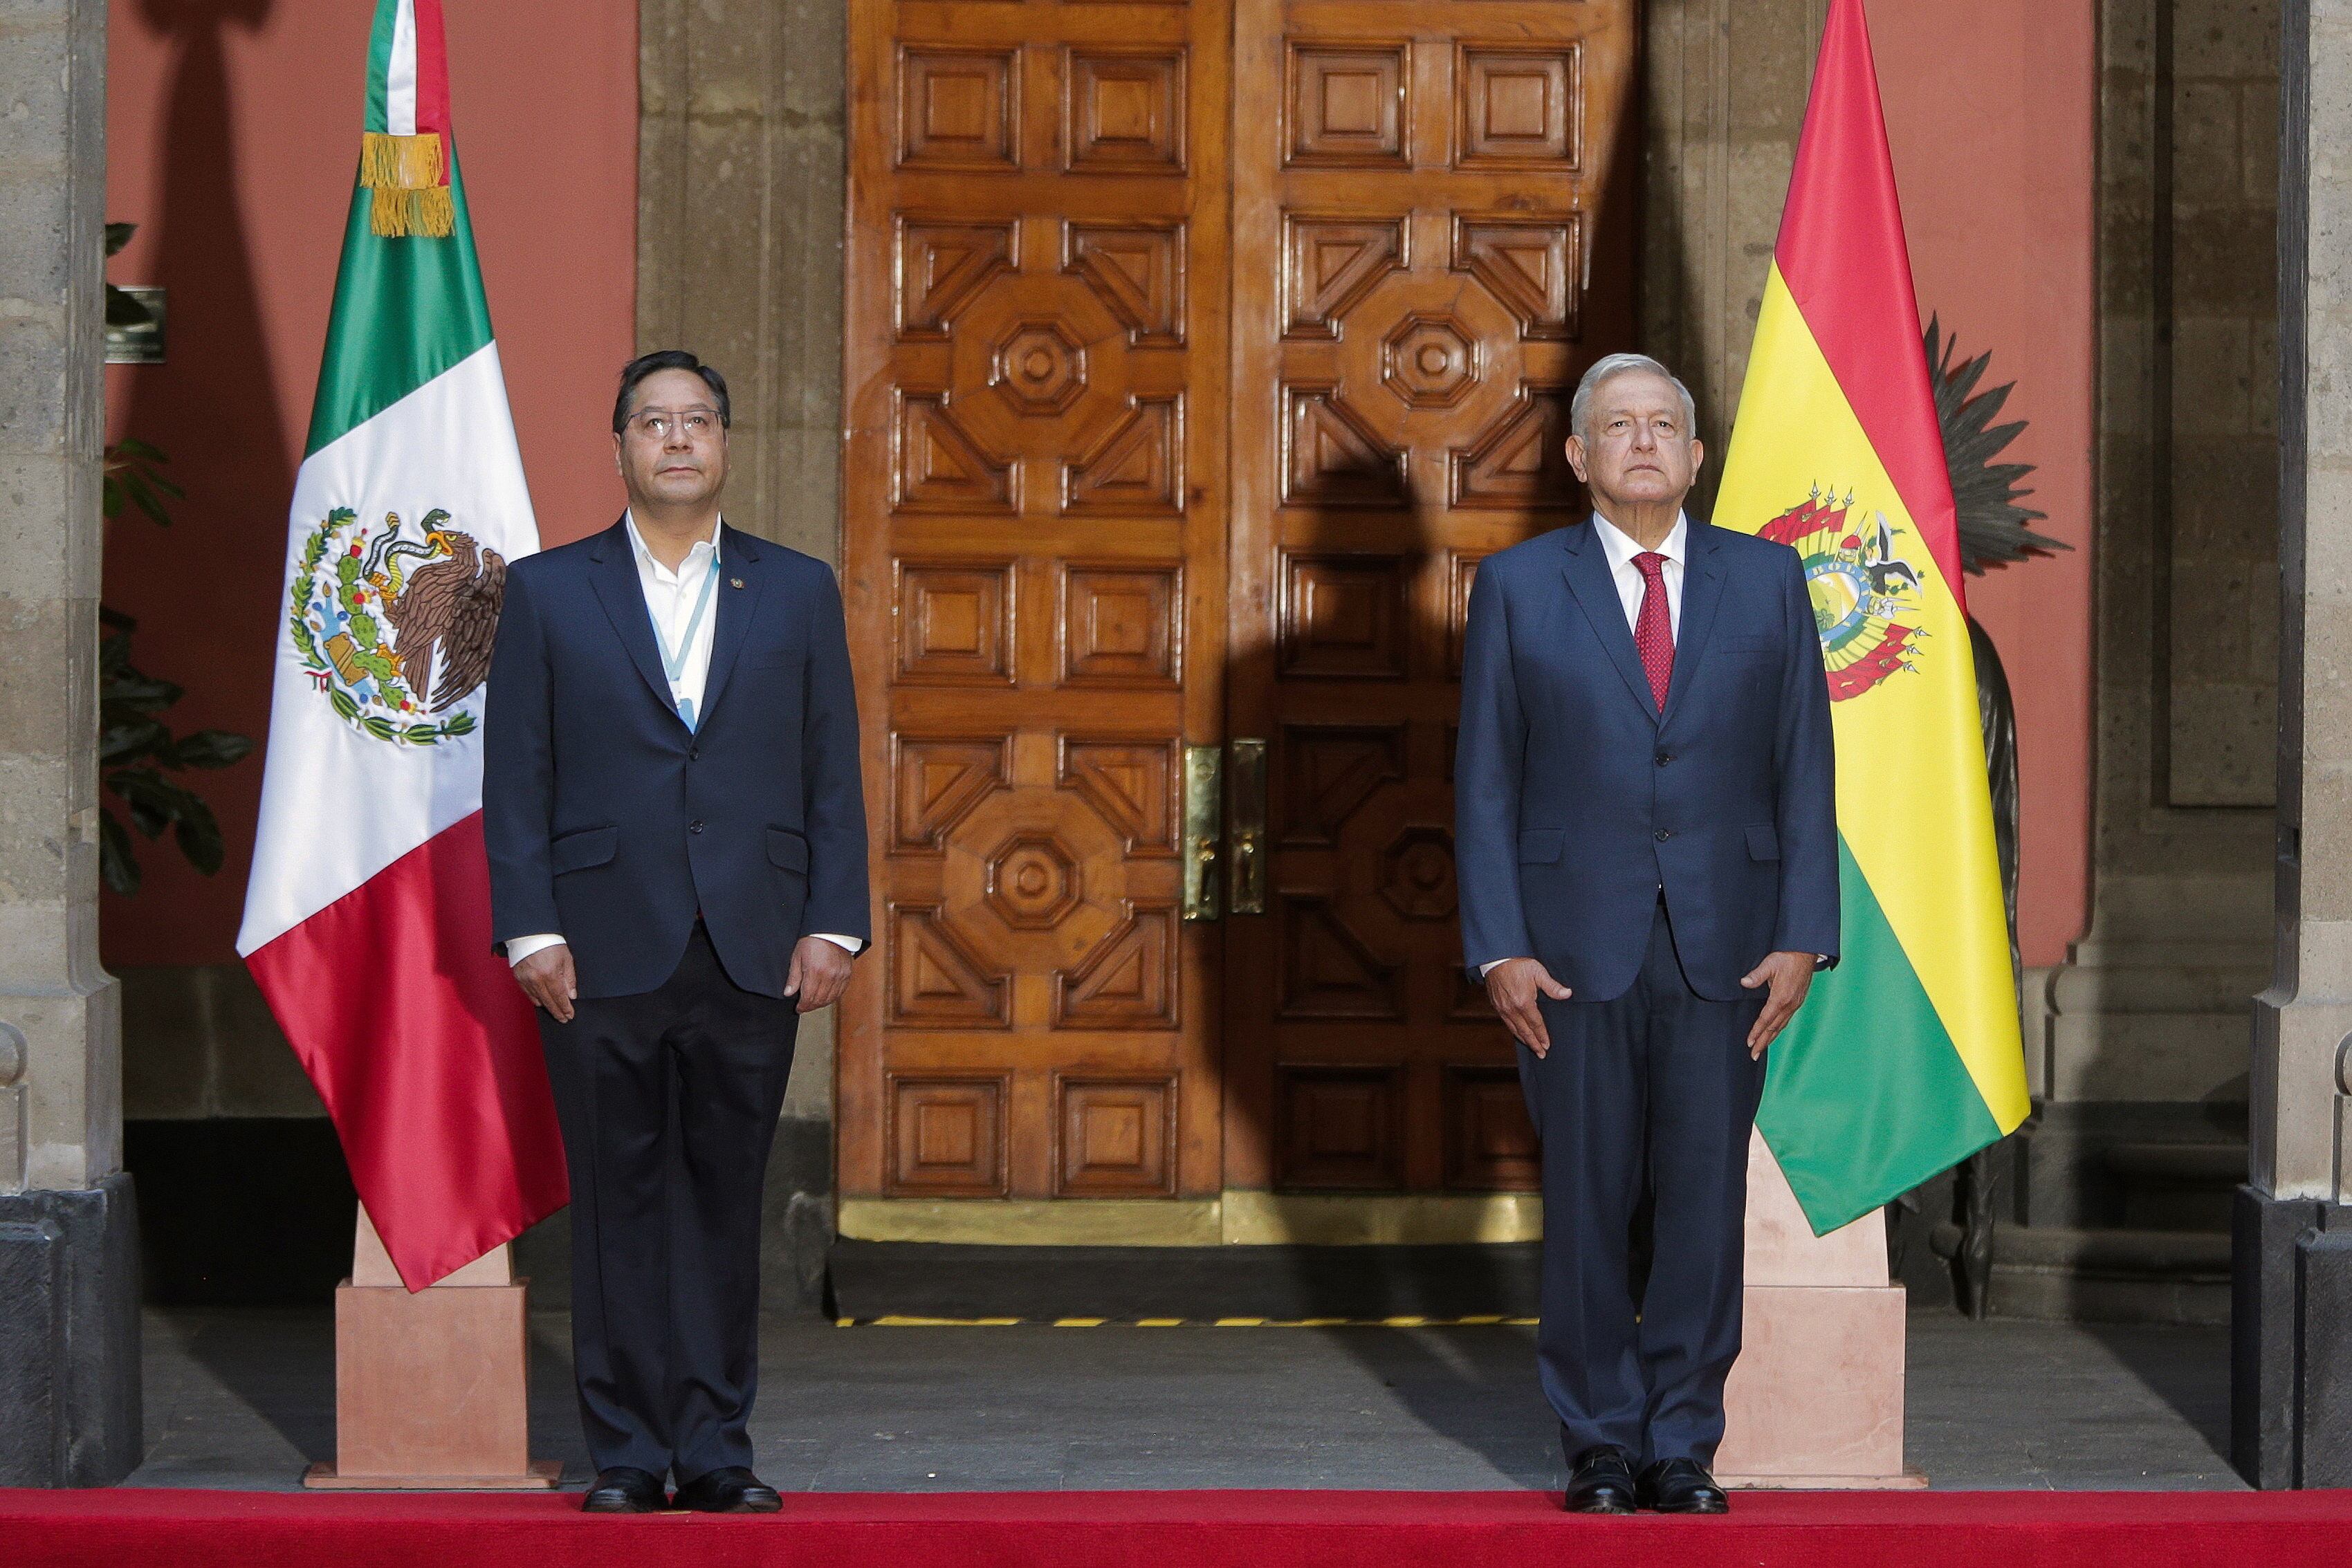 Los presidentes Luis Arce y Andrés Manuel López Obrador, de Bolivia y México respectivamente, posan tras una rueda de prensa en Ciudad de México, en marzo de 2021.